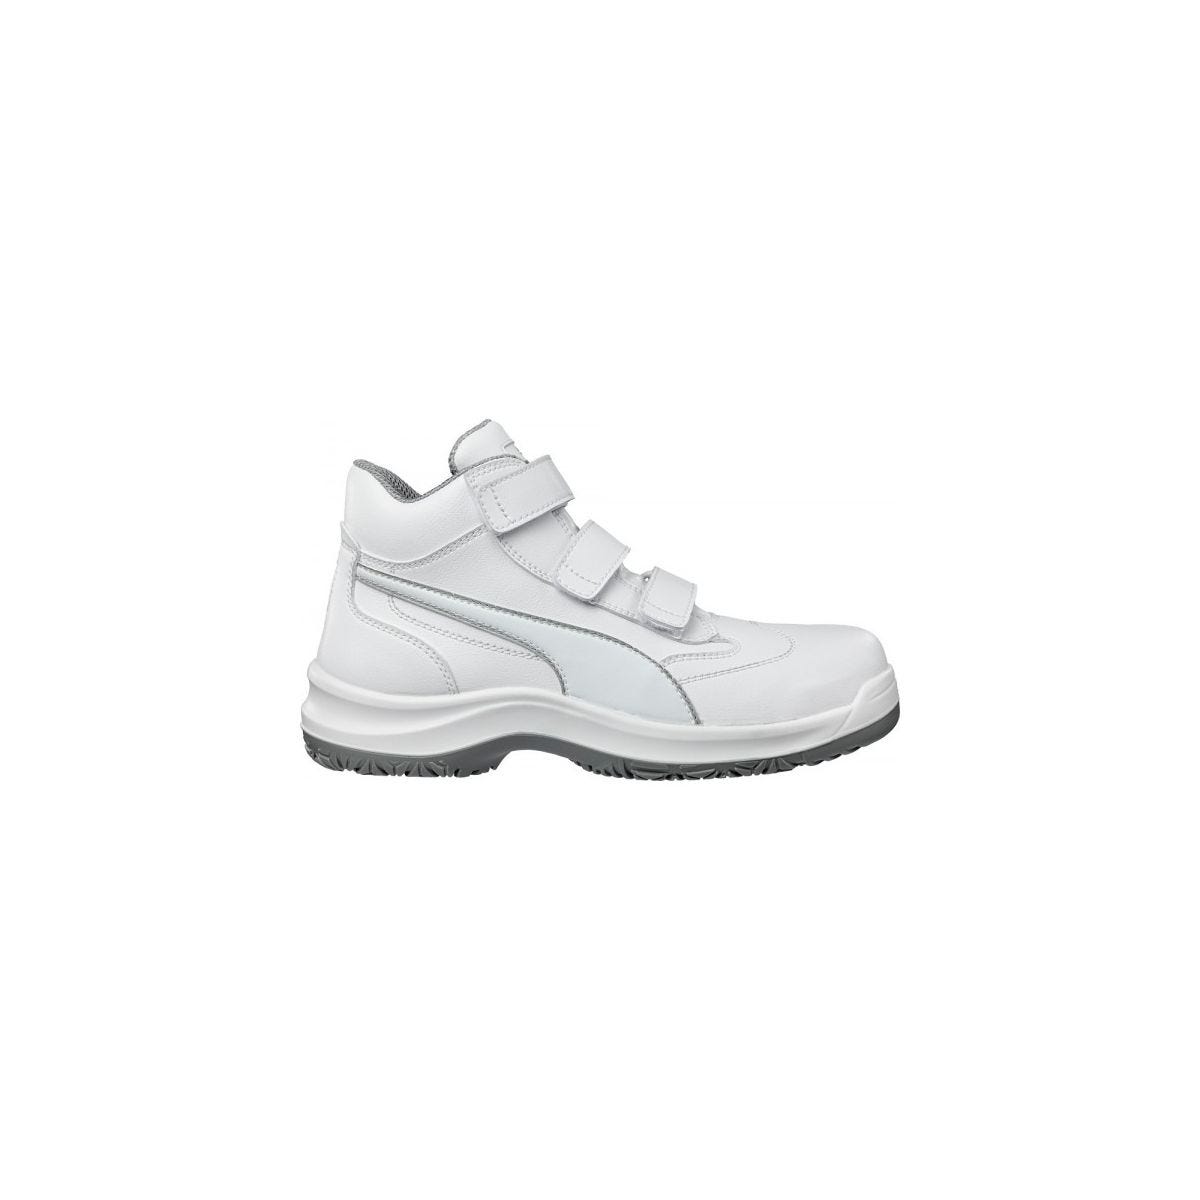 Chaussures de sécurité Absolute Mid S2 Blanc - Puma - Taille 42 0